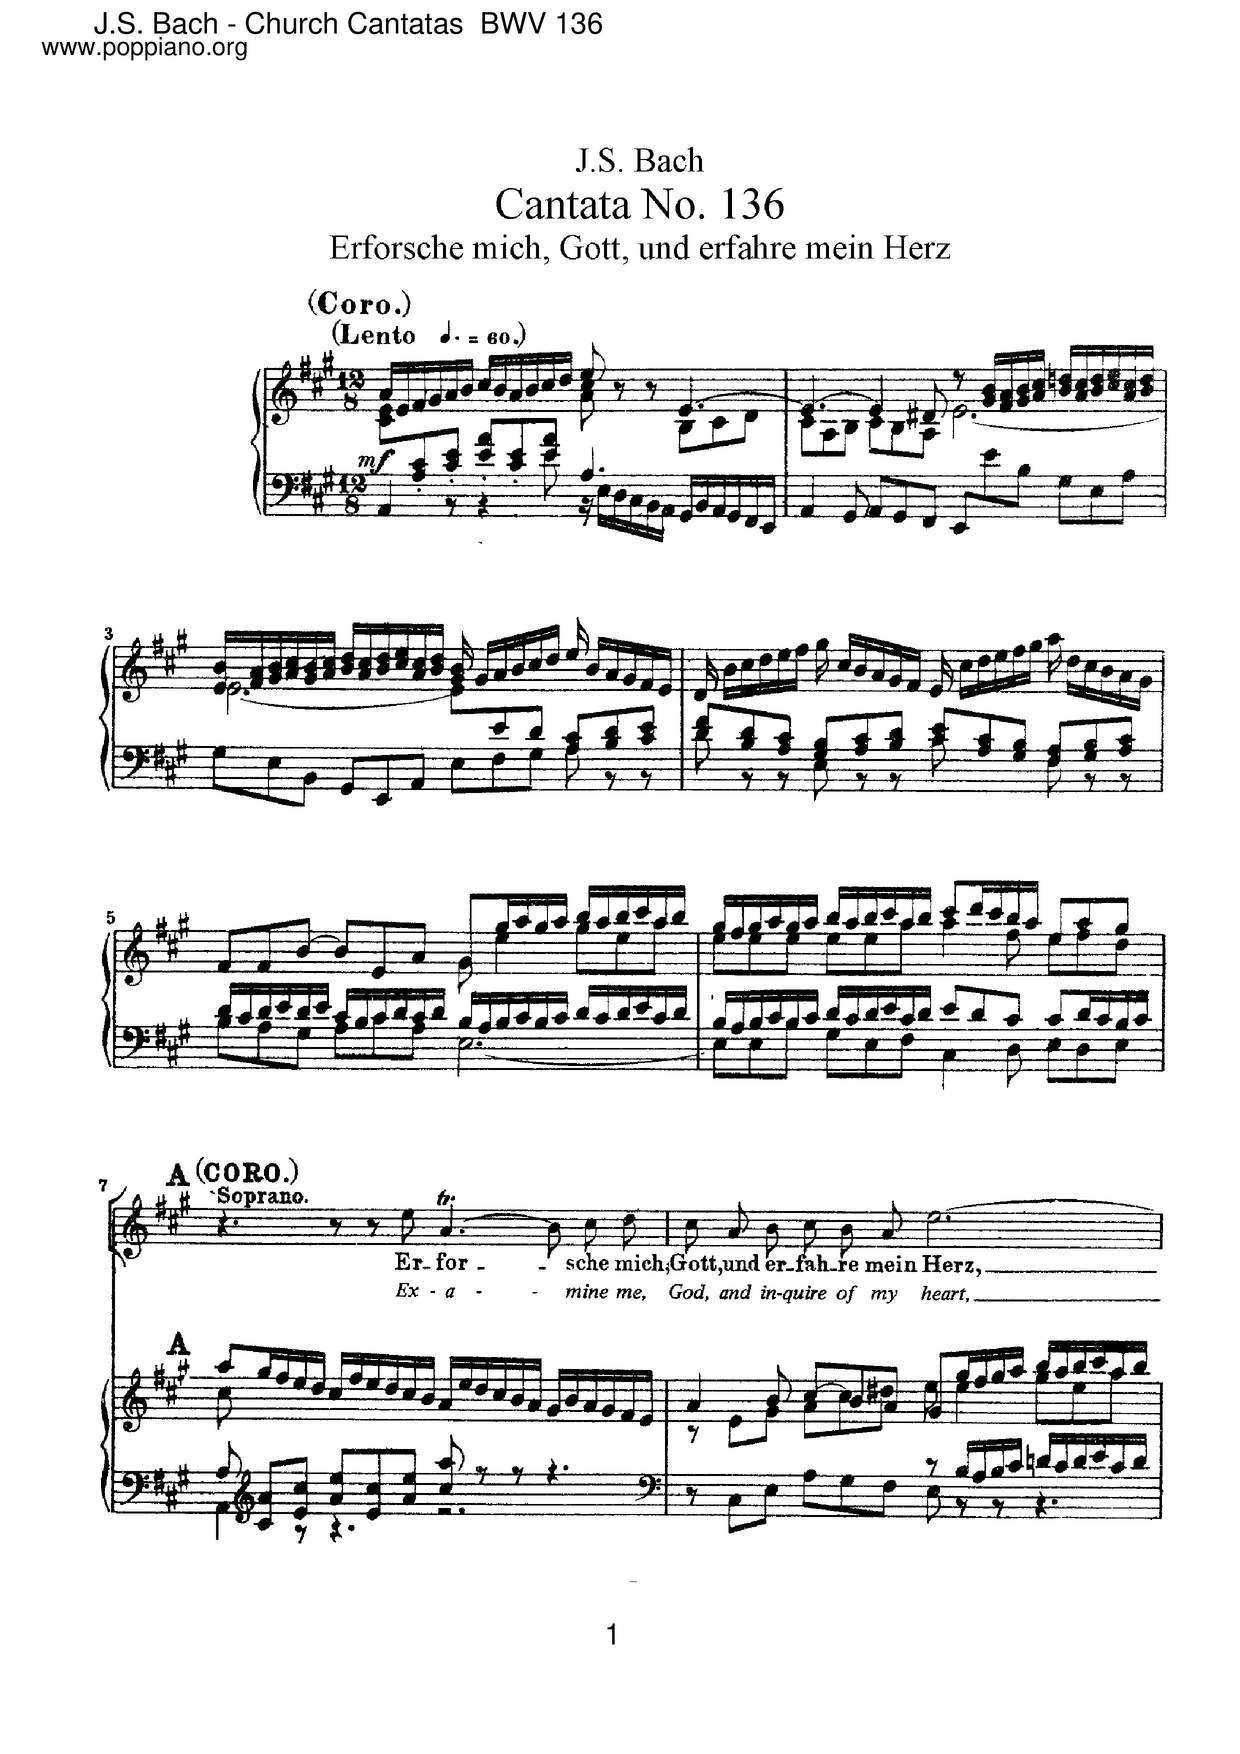 Erforsche Mich, Gott, Und Erfahre Mein Herz, BWV 136 Score